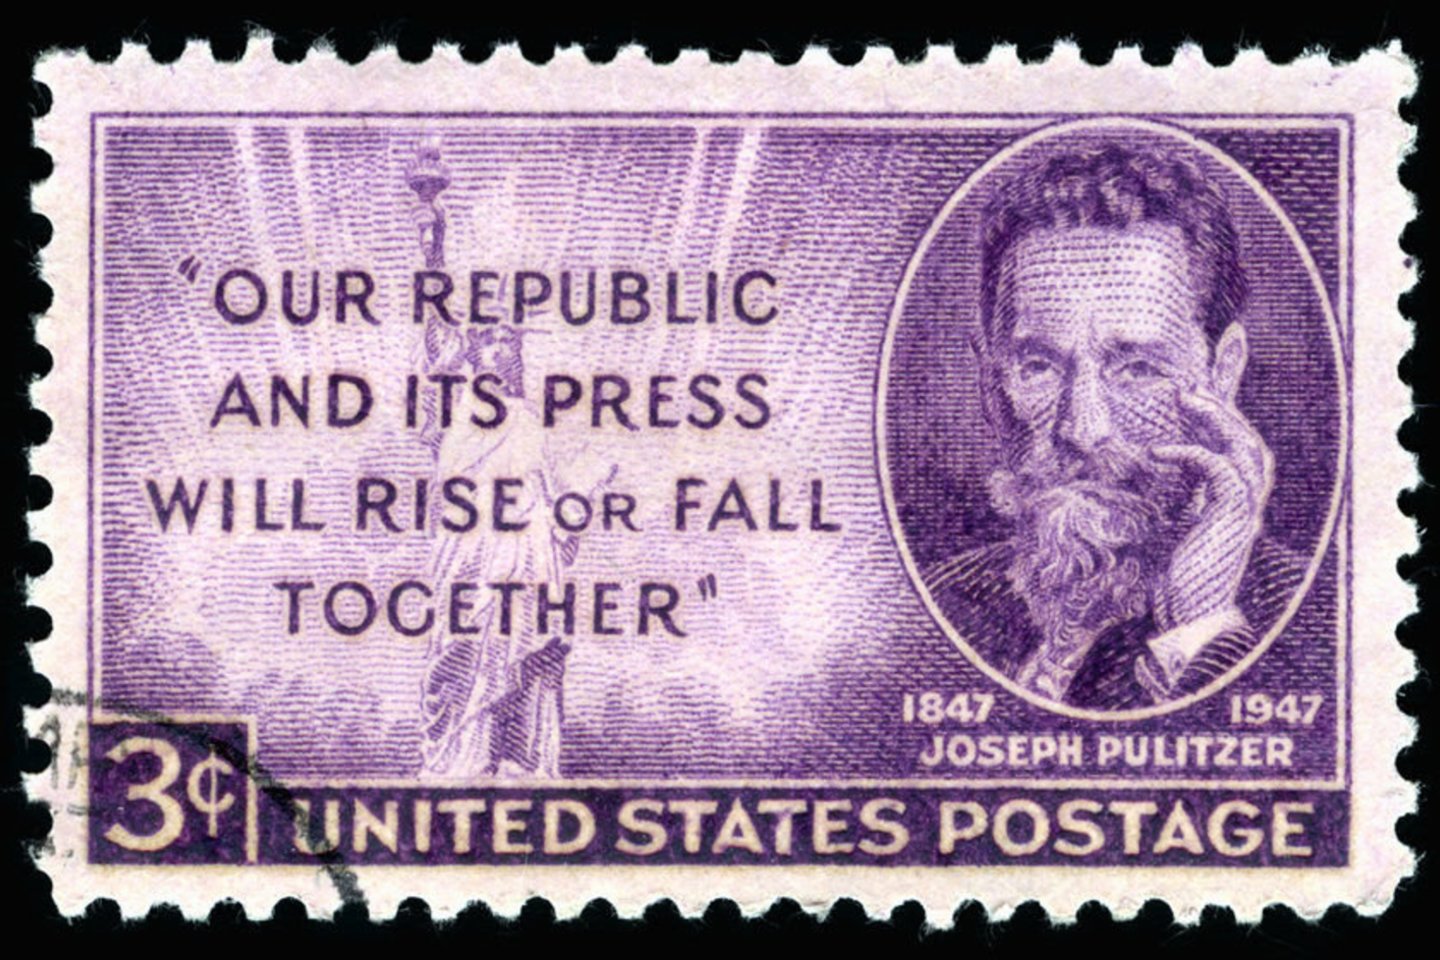 1847 m. gimė amerikiečių žurnalistas ir filantropas Josephas Pulitzeris. Jo iniciatyva ir lėšomis Valstijose buvo įkurta žurnalistikos aukštųjų mokyklų. Nuo 1917 m. skiriama jo vardo premija yra prestižiškiausias spaudos darbuotojų apdovanojimas. Mirė 1911 m.<br>123rf nuotr.